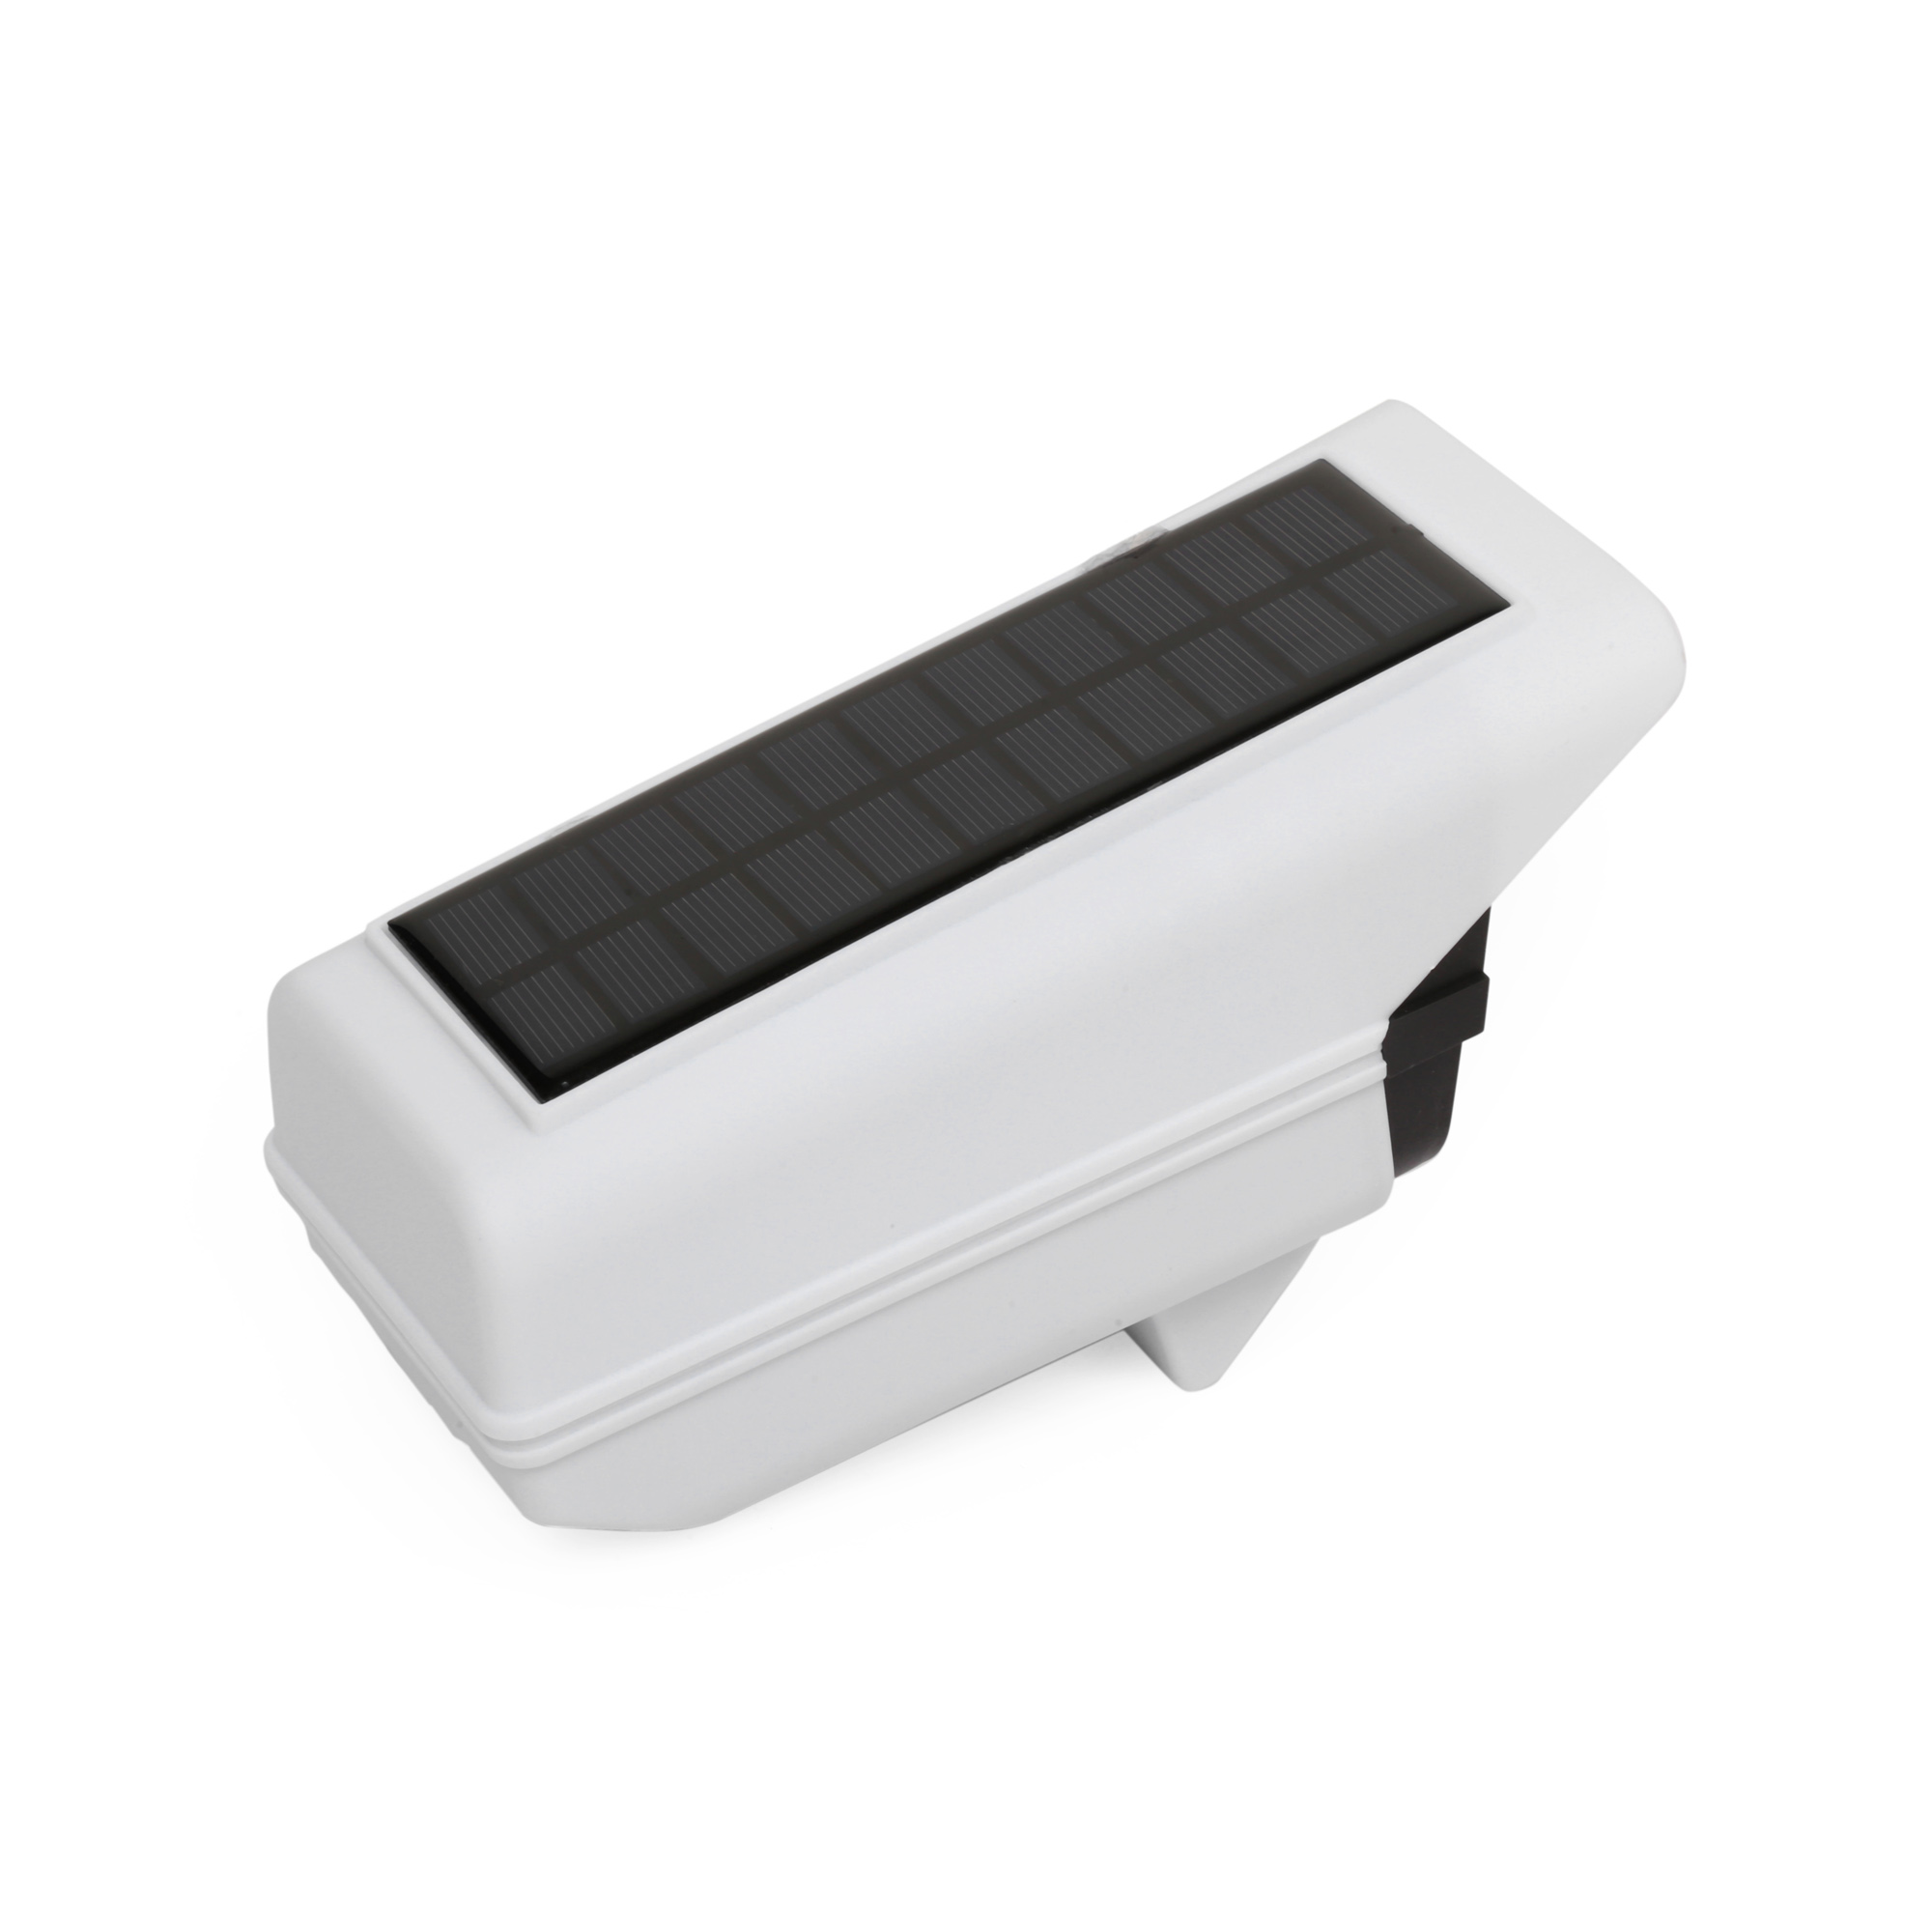 Pocketman KL-2178B 77 LED Kamera Görünümlü Hareket Sensörlü Ayarlanabilir Su Geçirmez Solar Aydınlatma